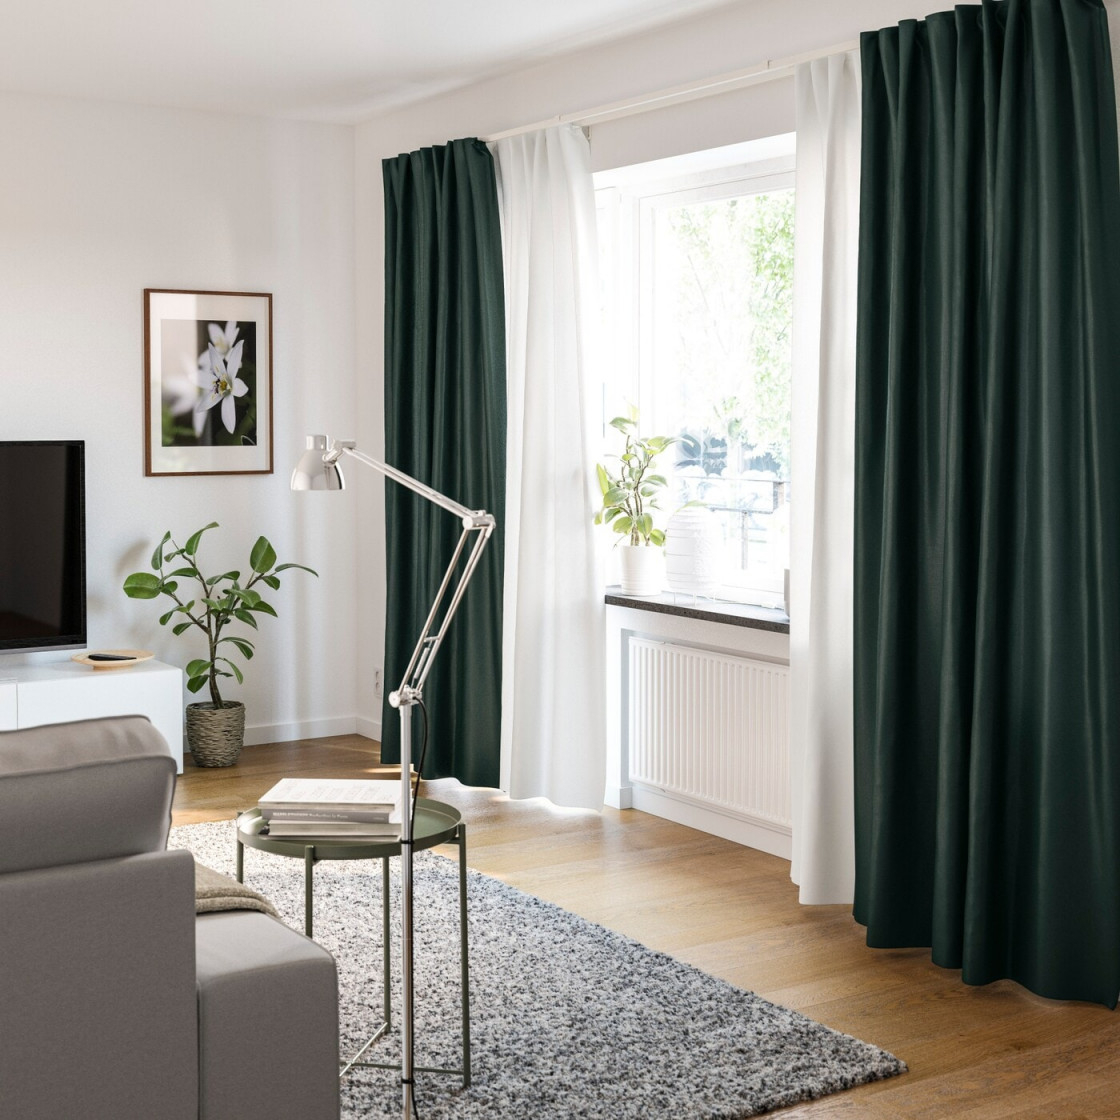 Gardinenideen Inspirationen Für Dein Zuhause  Ikea von Ideen Gardinen Wohnzimmer Bild